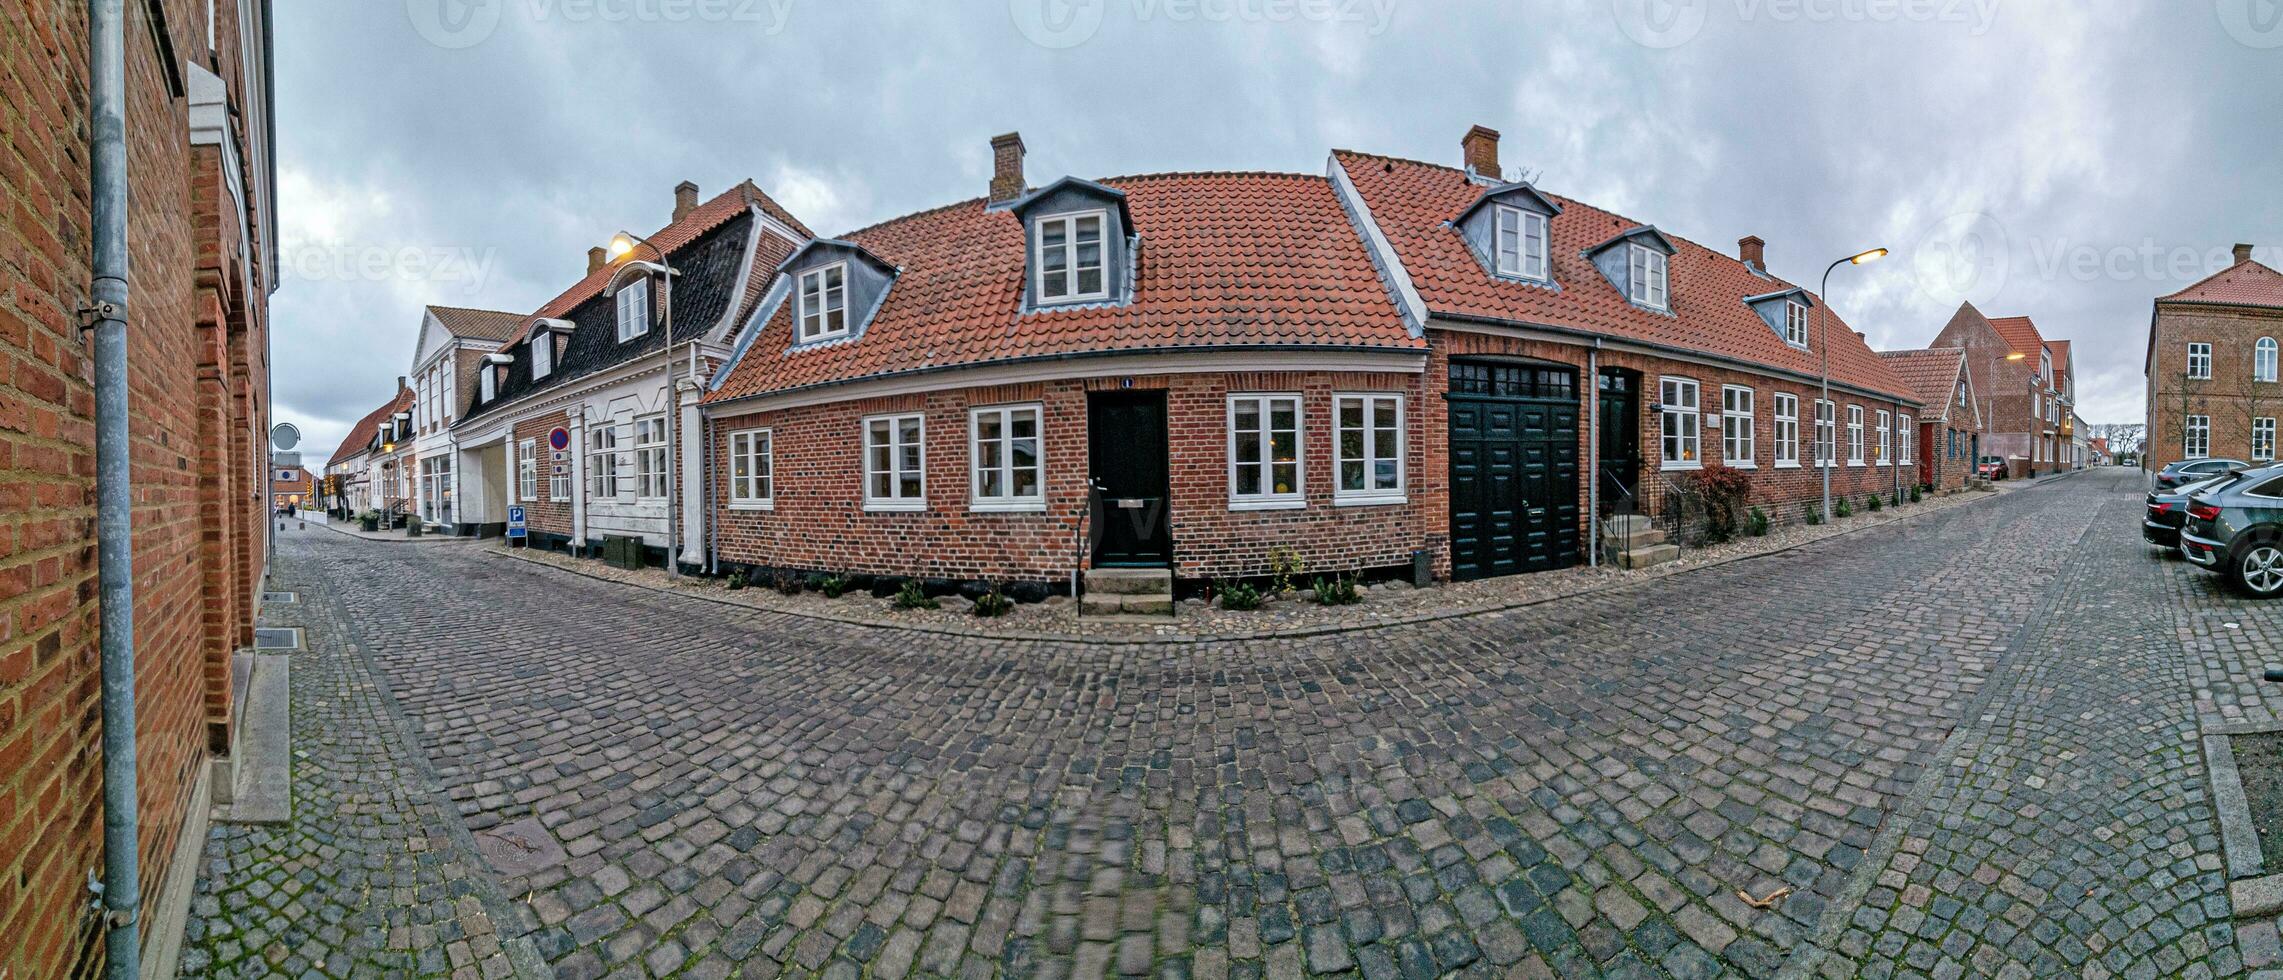 panoramique image plus de une typique rue scène de une danois village photo